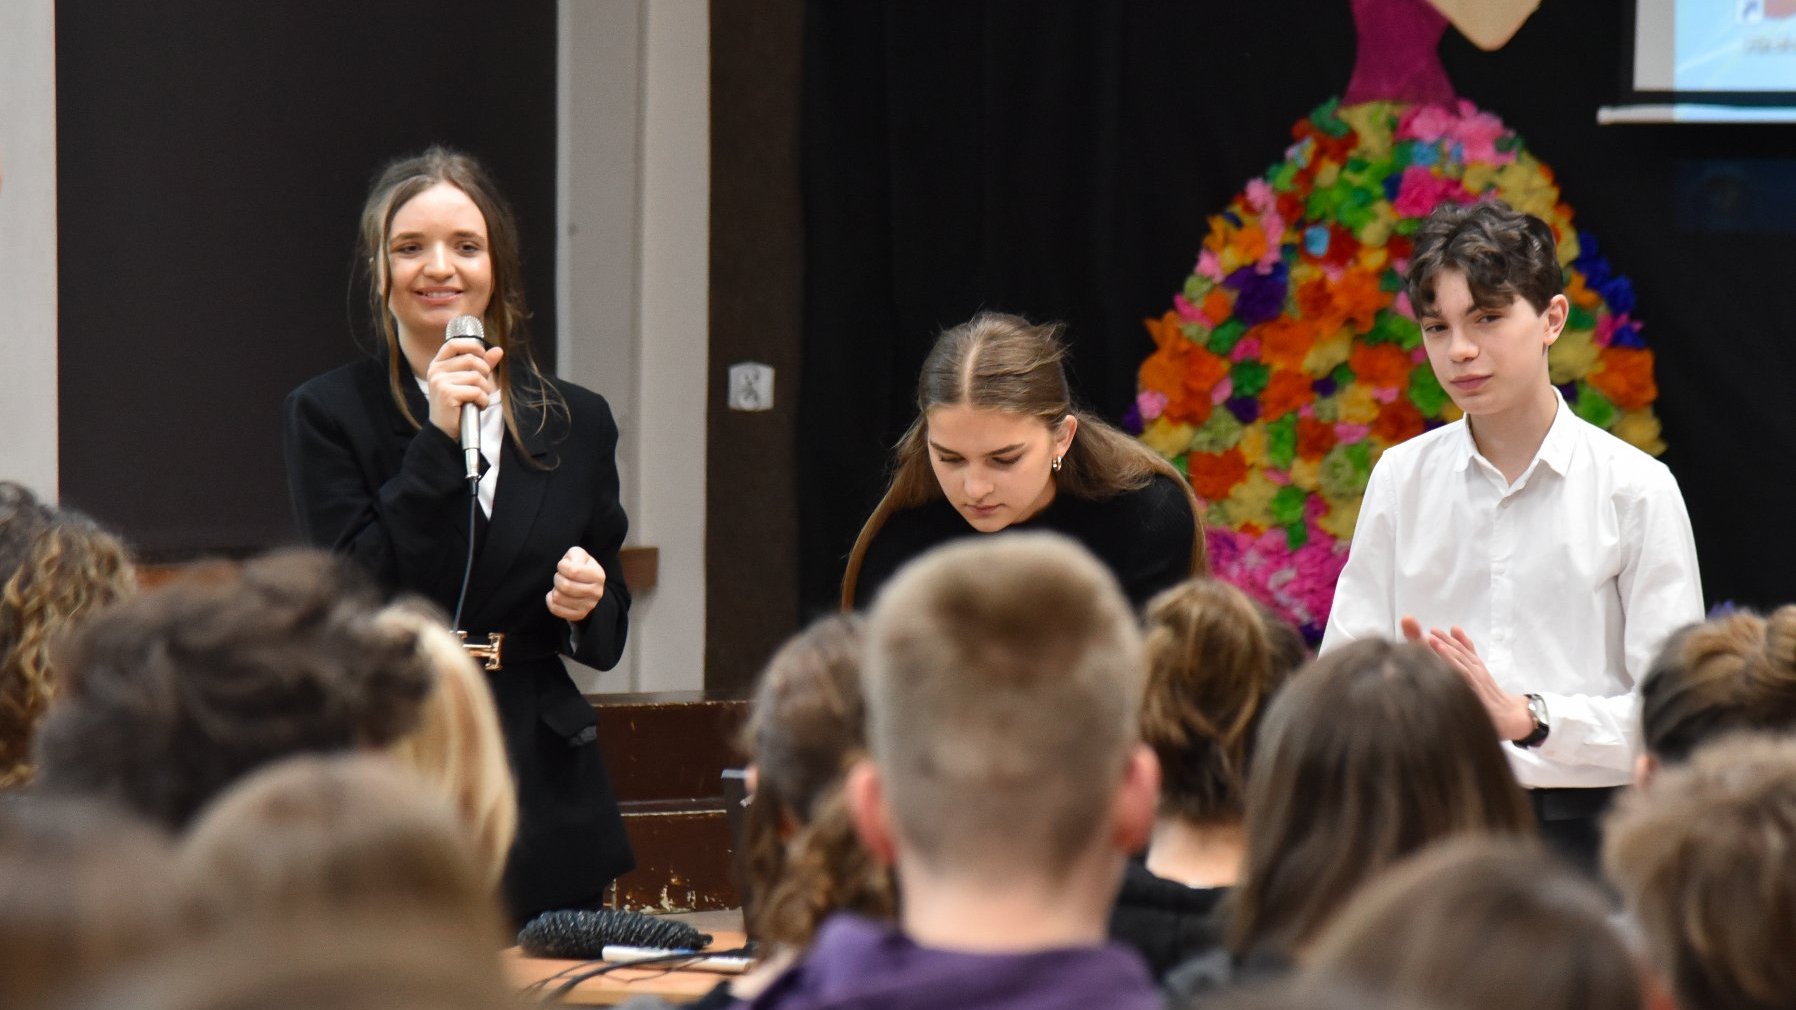 Na zdjęciu troje uczniów podczas prezentacji, jedna z dziewczyn trzyma w ręku mikrofon